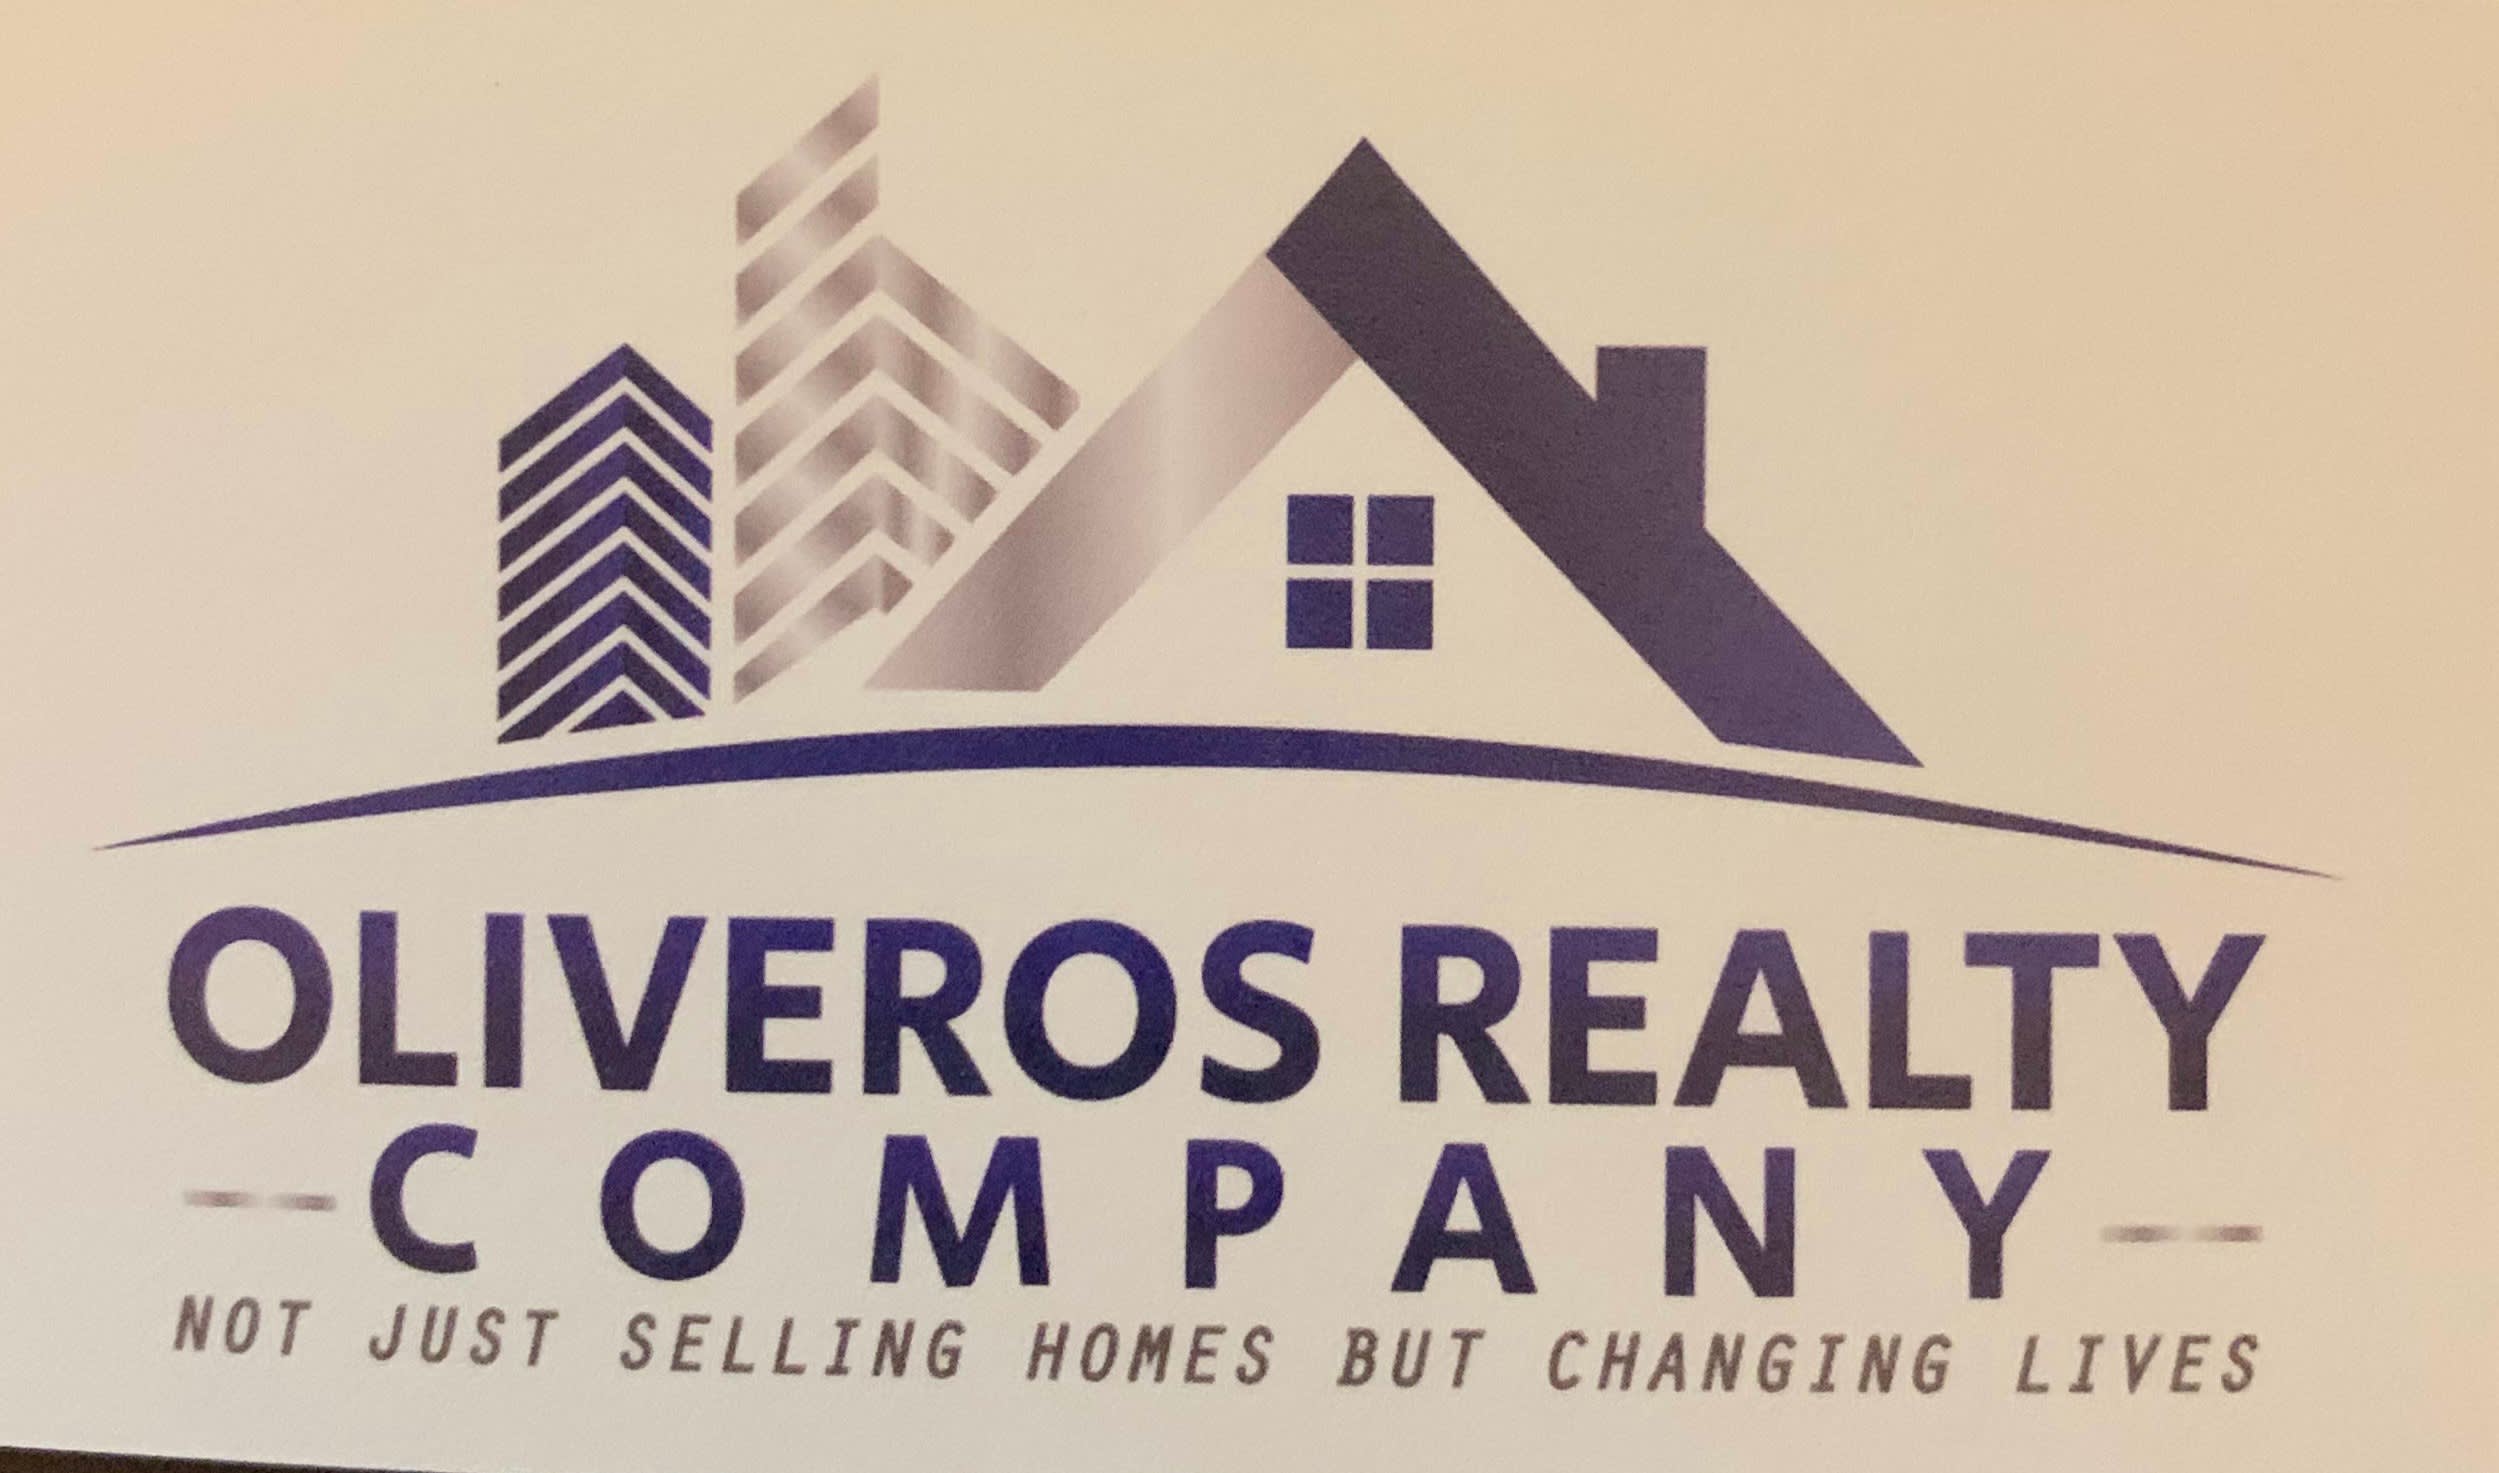 Oliveros Realty Company